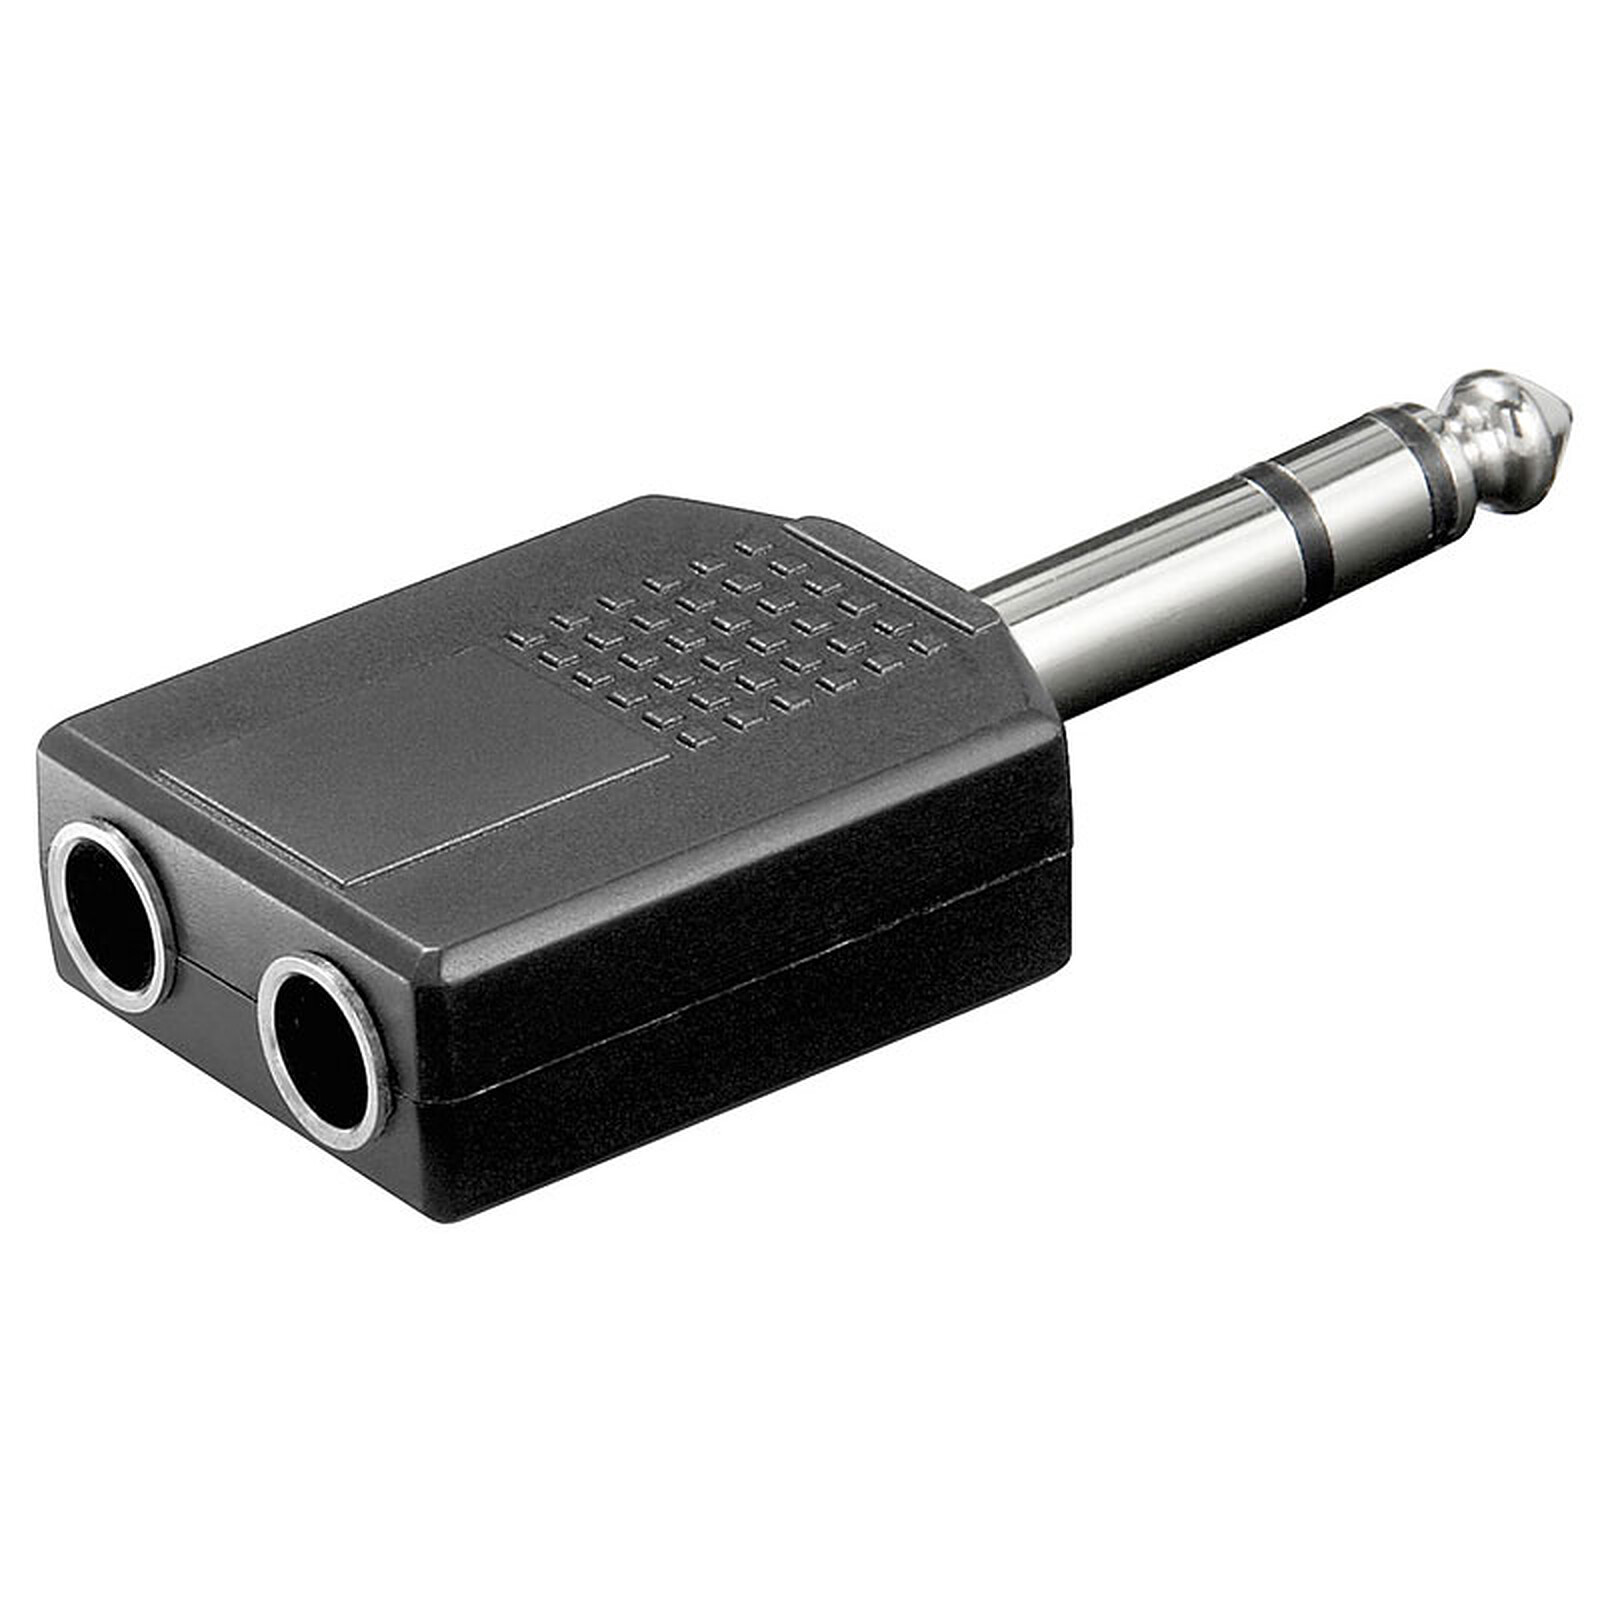 Dédoubleur Jack 3.5 mm stéréo (0.15 m) - Adaptateur audio - Garantie 3 ans  LDLC